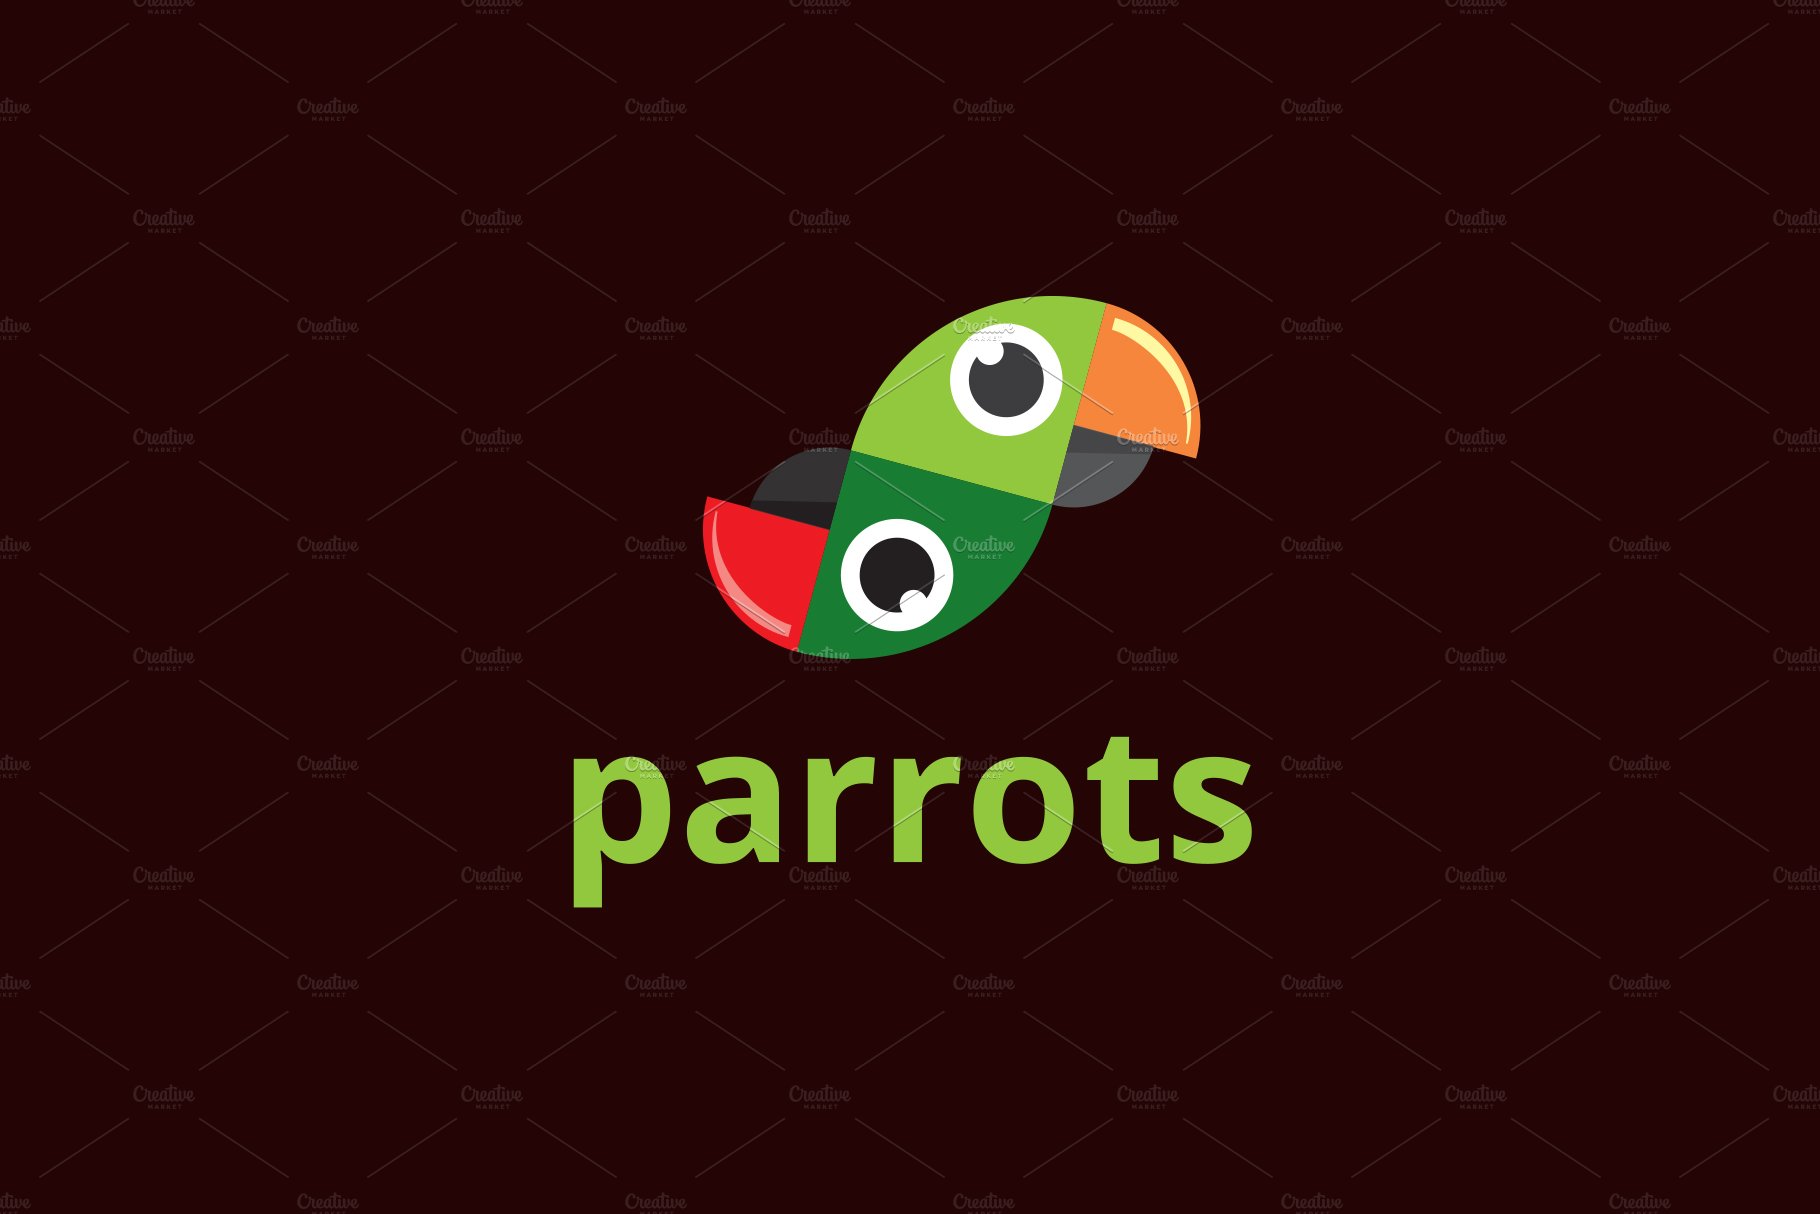 Parrots Logo preview image.